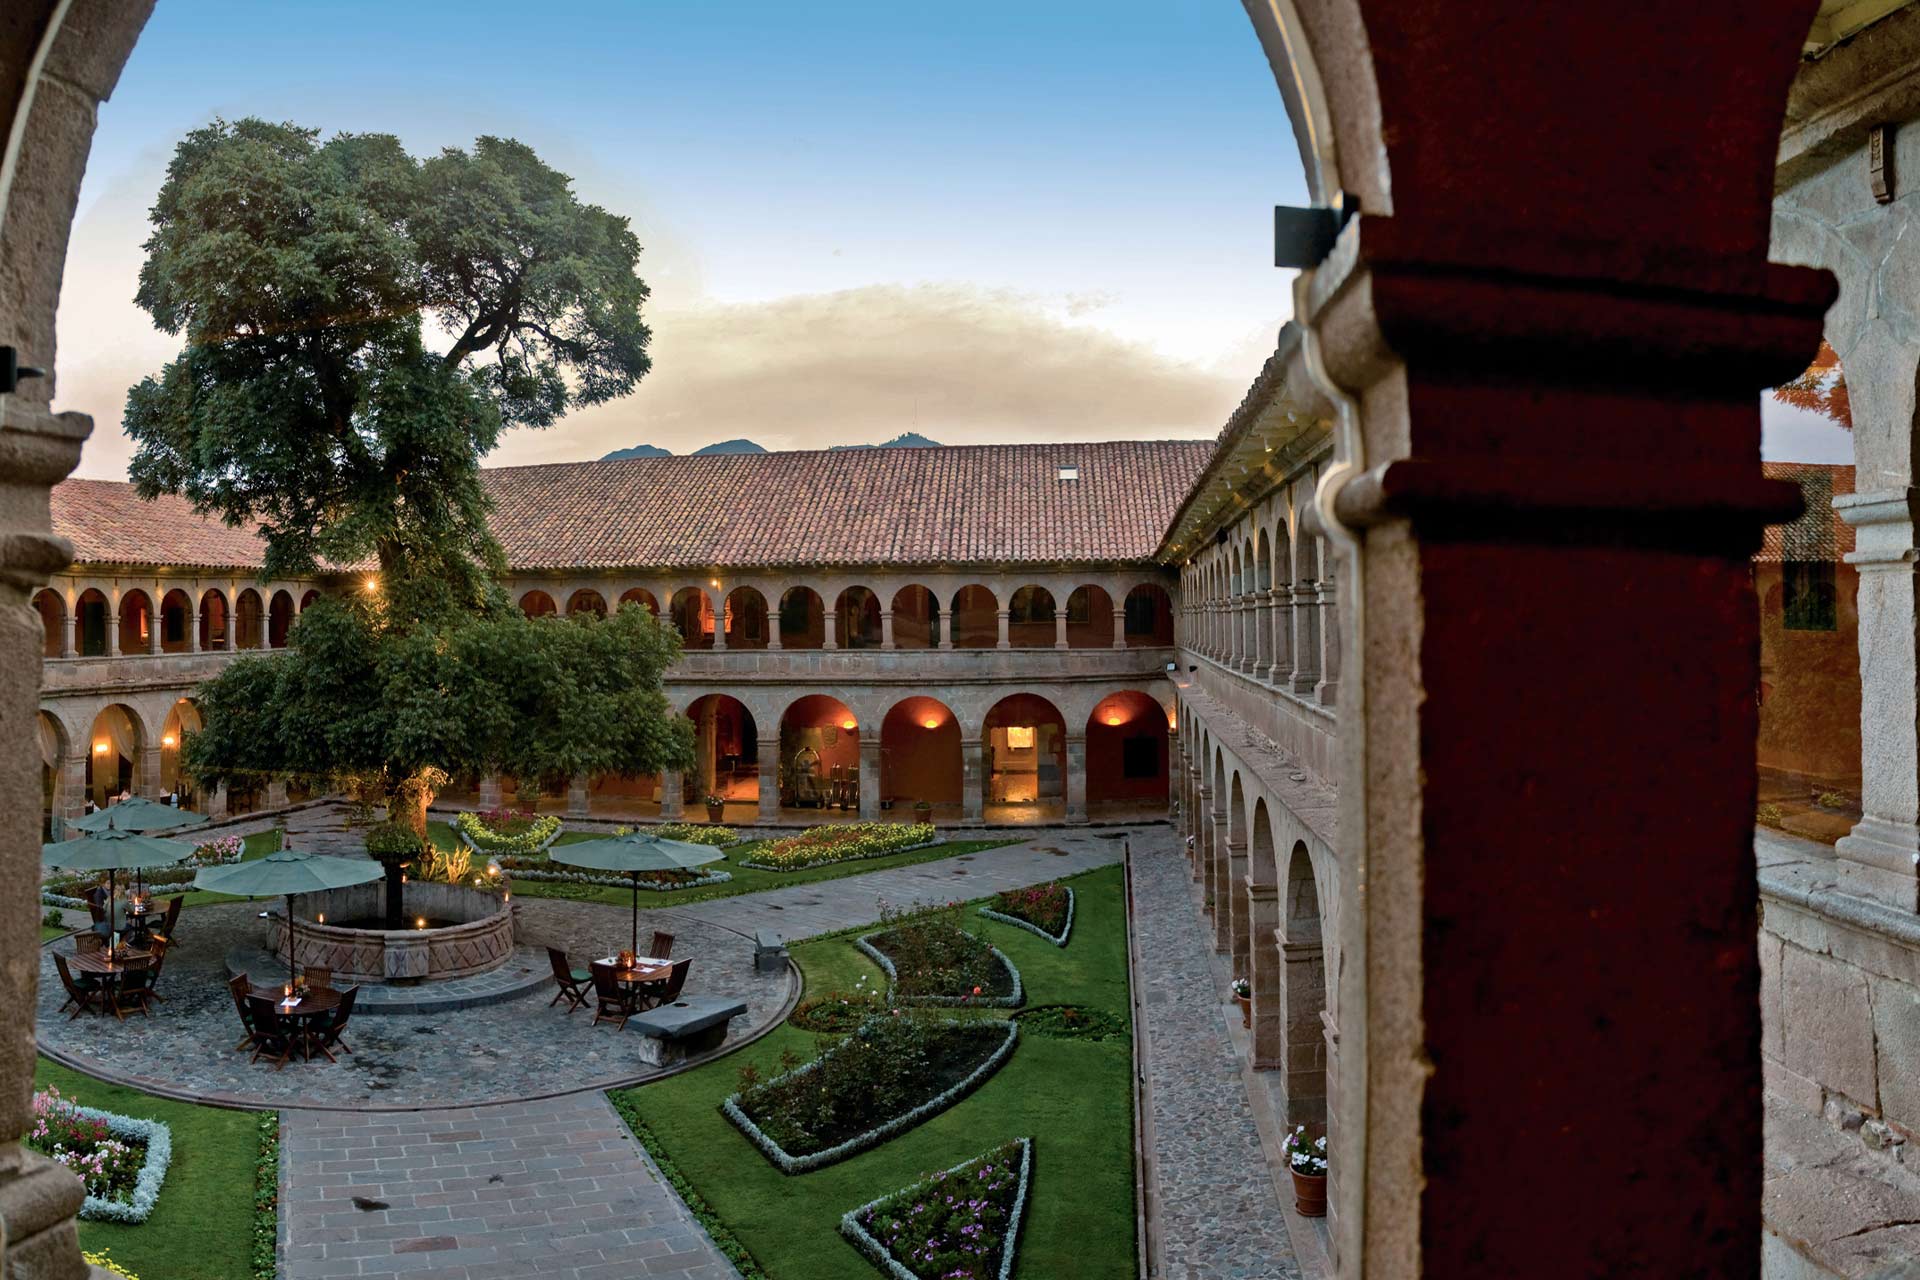 Monasterio, A Belmond Hotel in Cusco, Peru